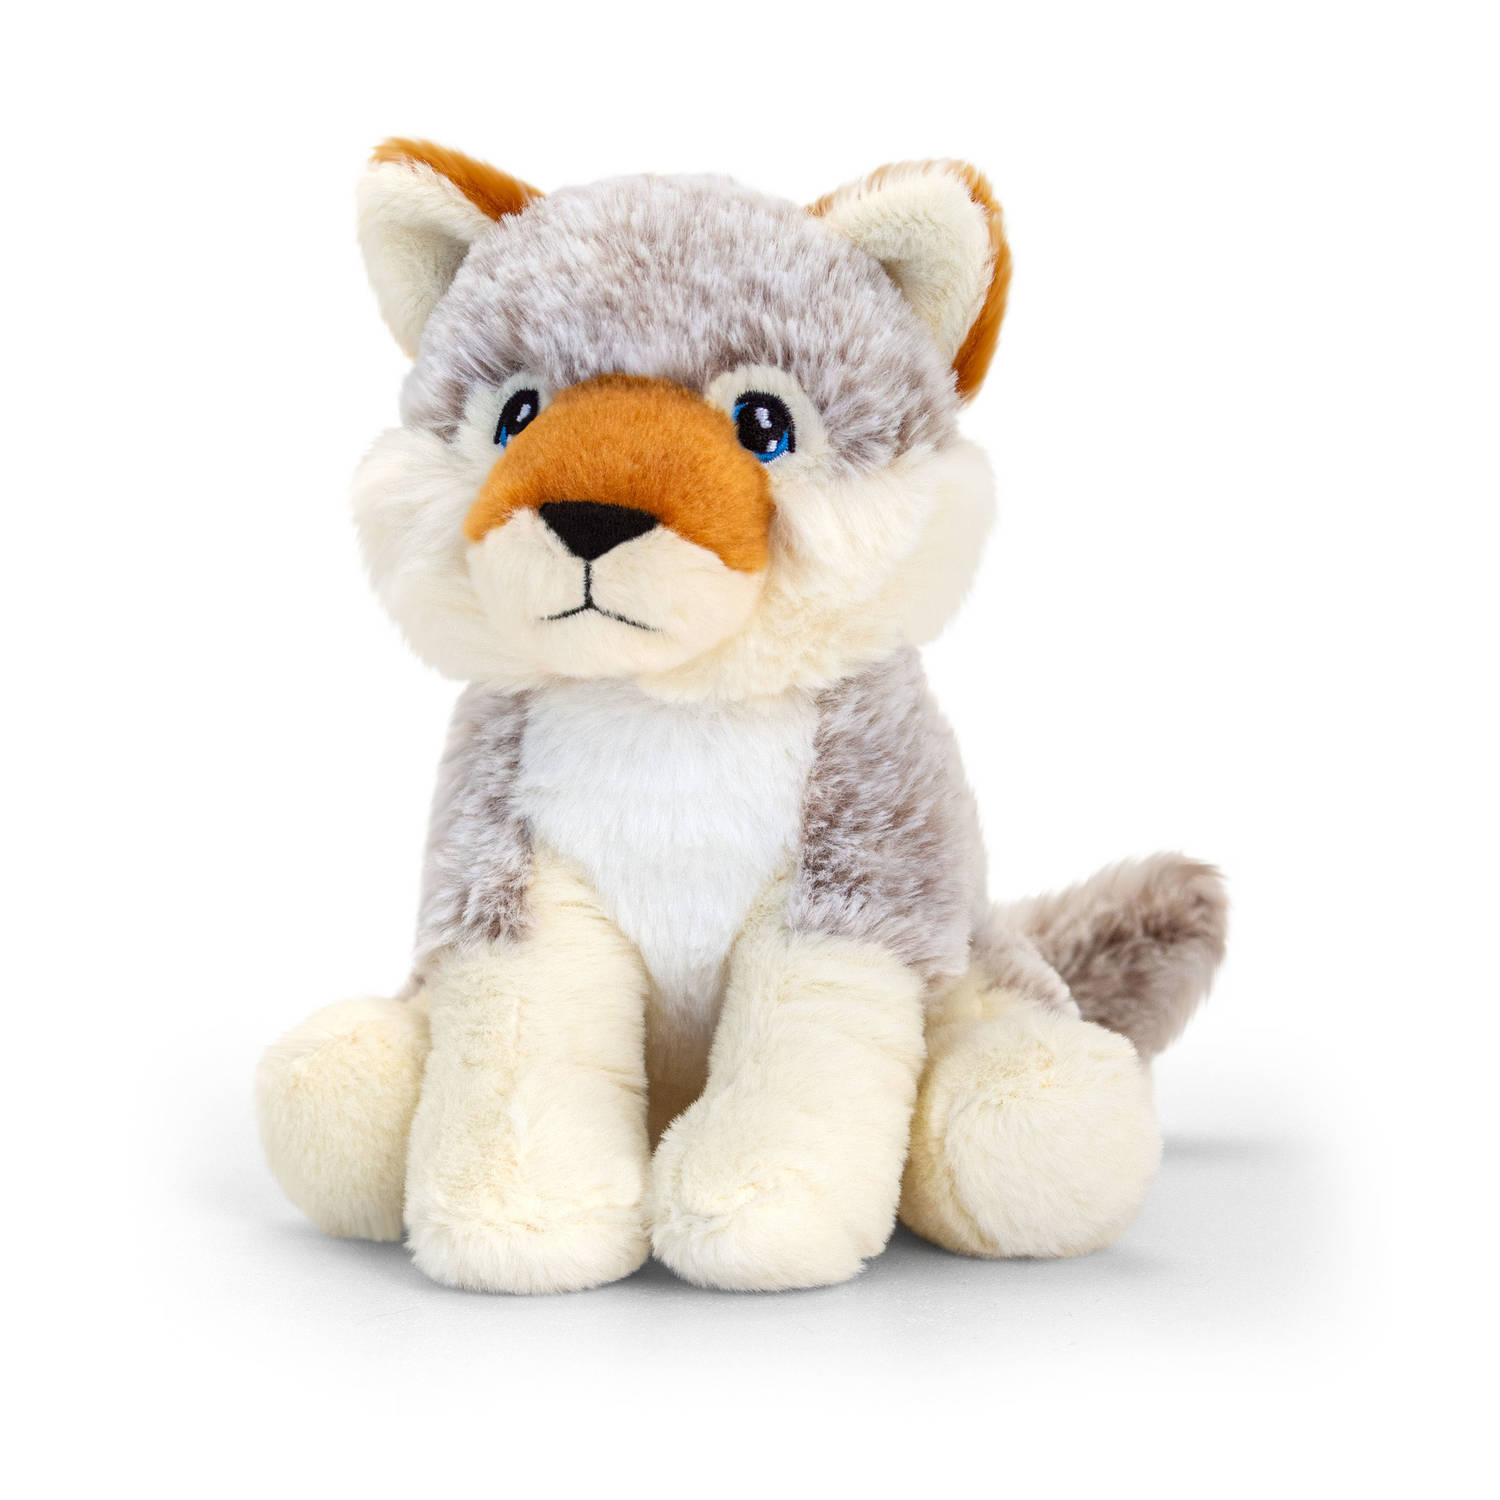 Pluche knuffel dieren grijze wolf 18 cm - Knuffelbeesten wolven speelgoed